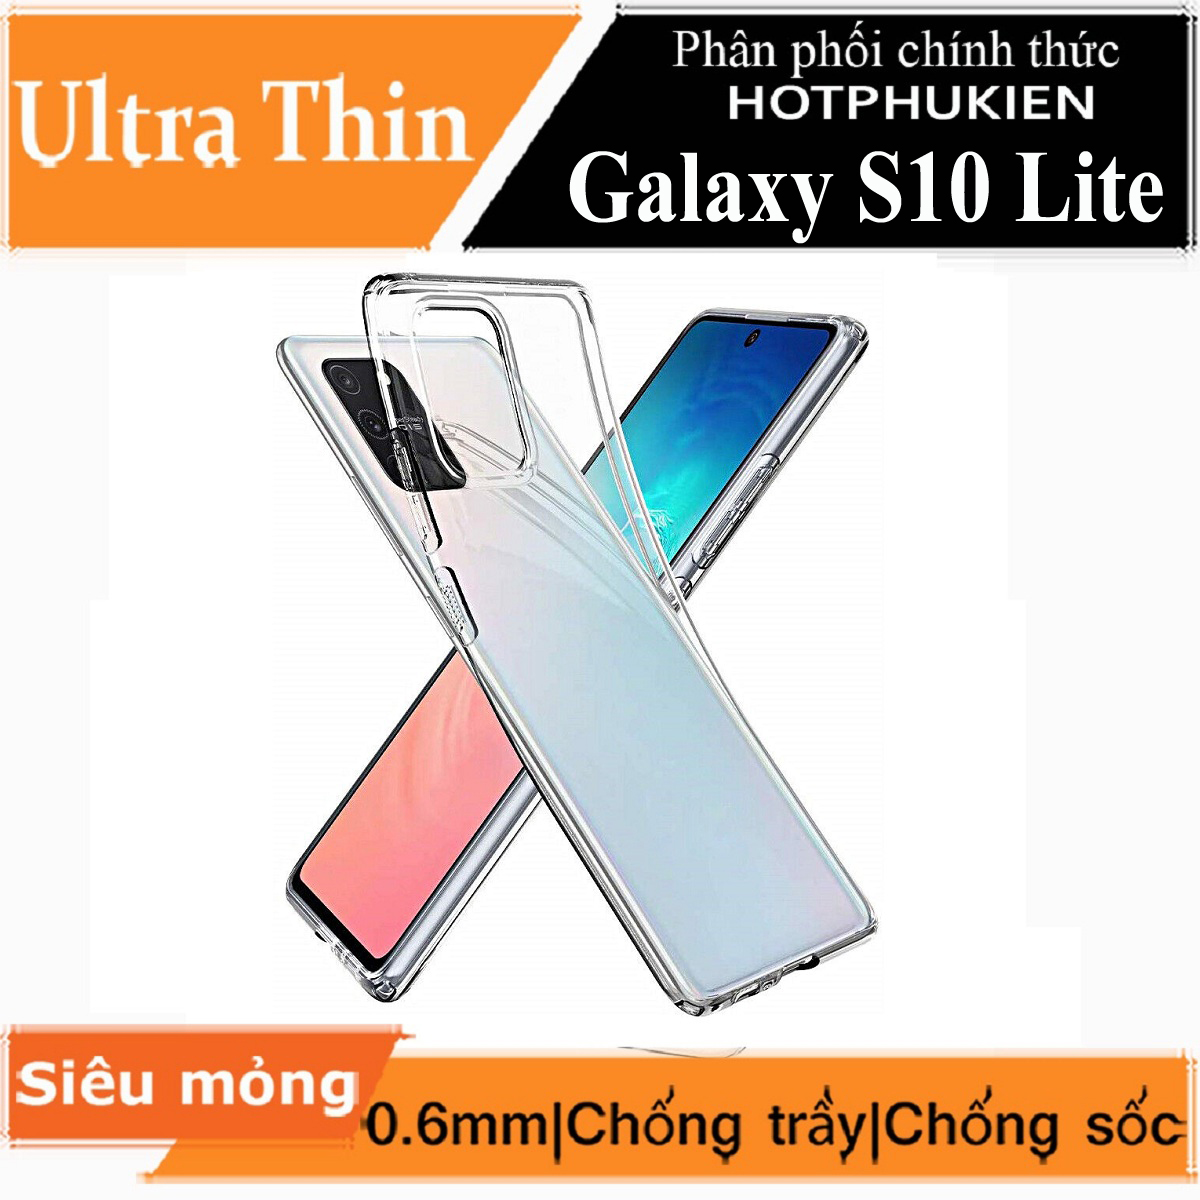 Ốp lưng silicon dẻo cho Samsung Galaxy S10 Lite hiệu Ultra Thin